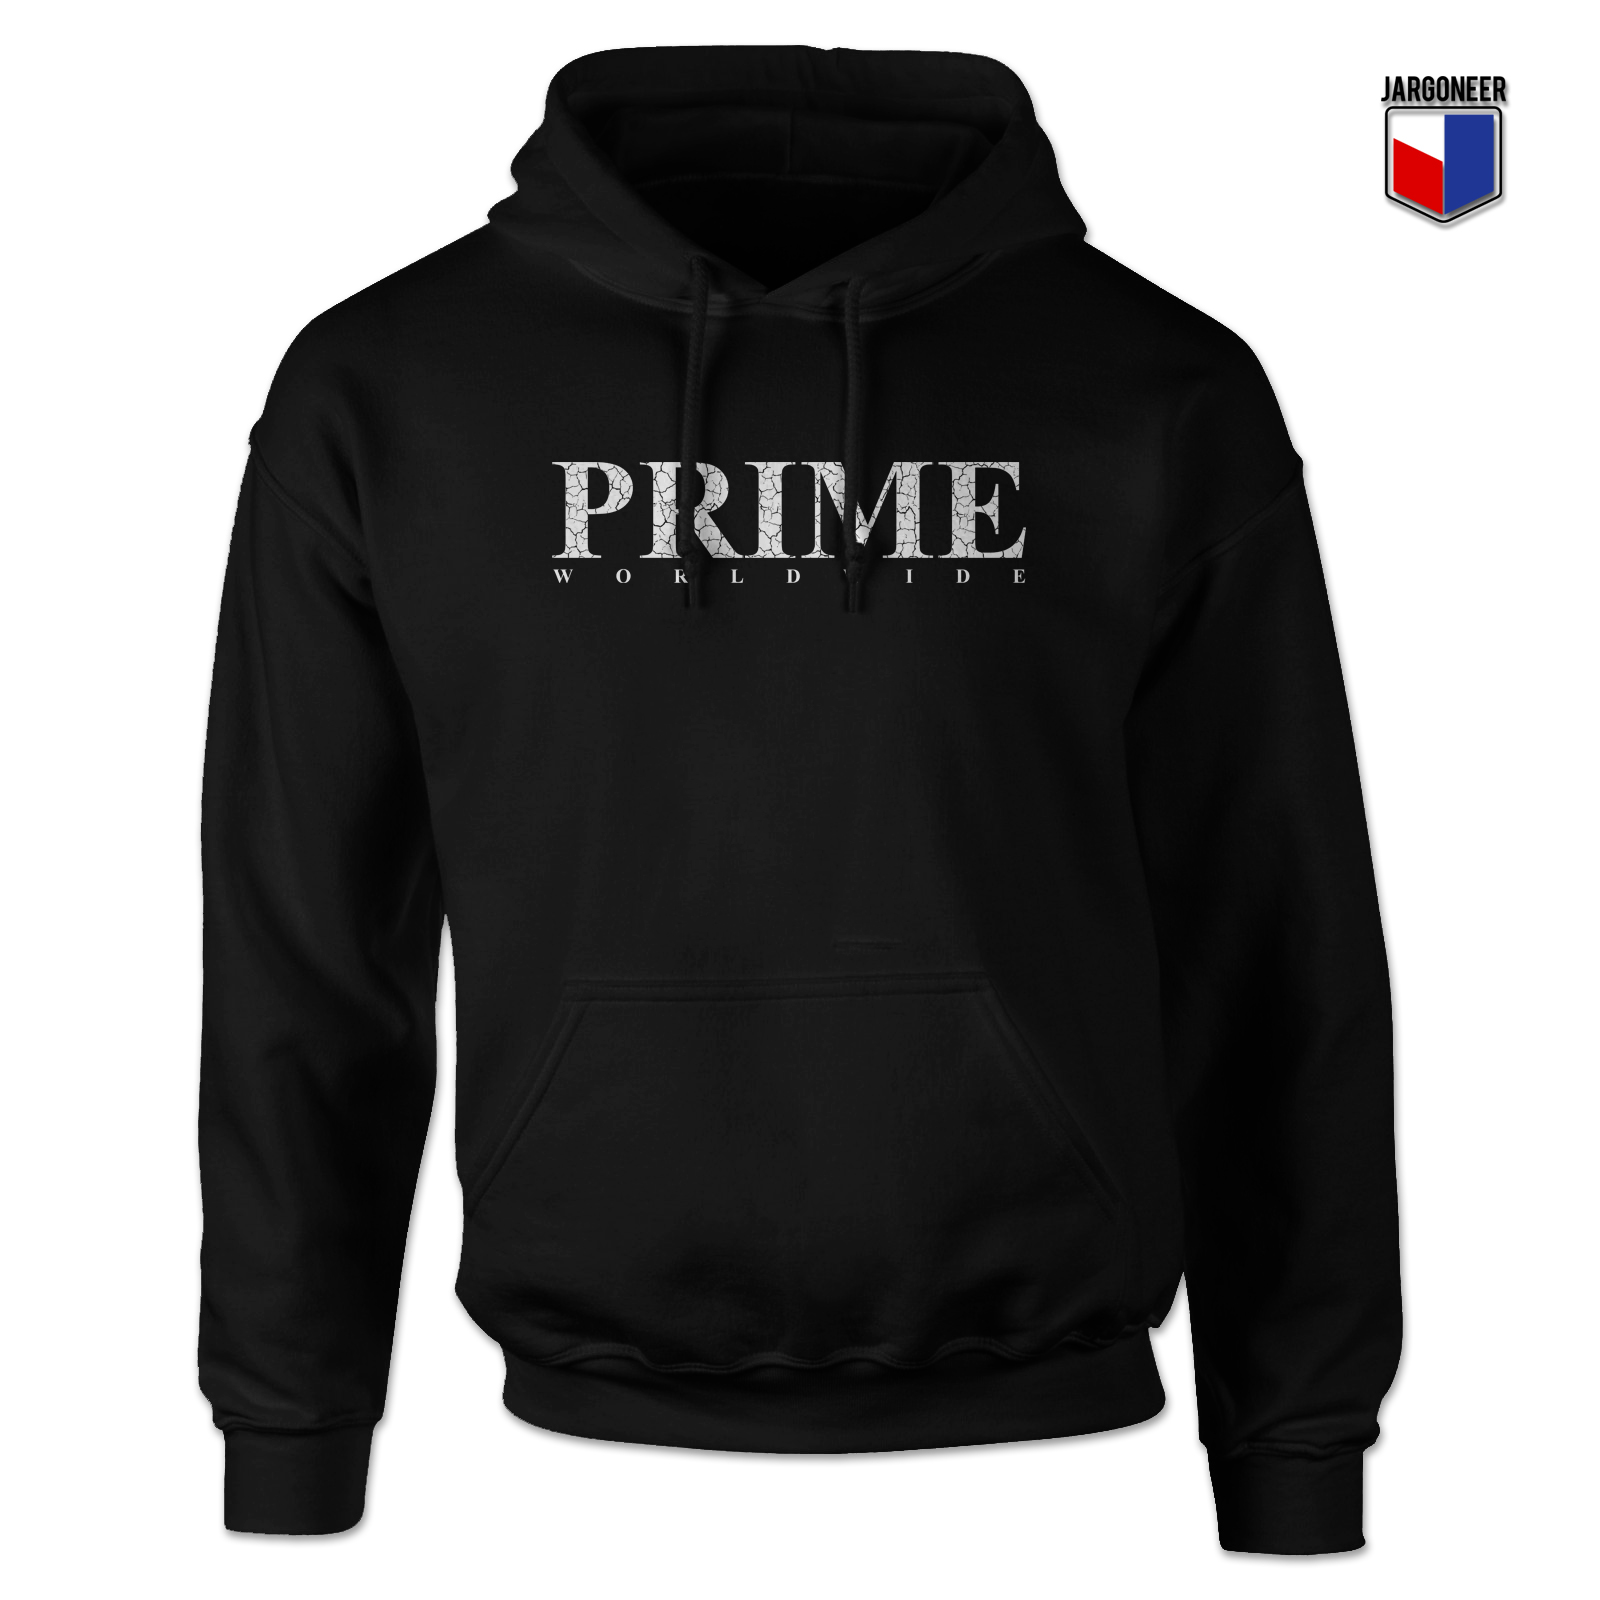 Prime Worldwide 1 - Shop Unique Graphic Cool Shirt Designs